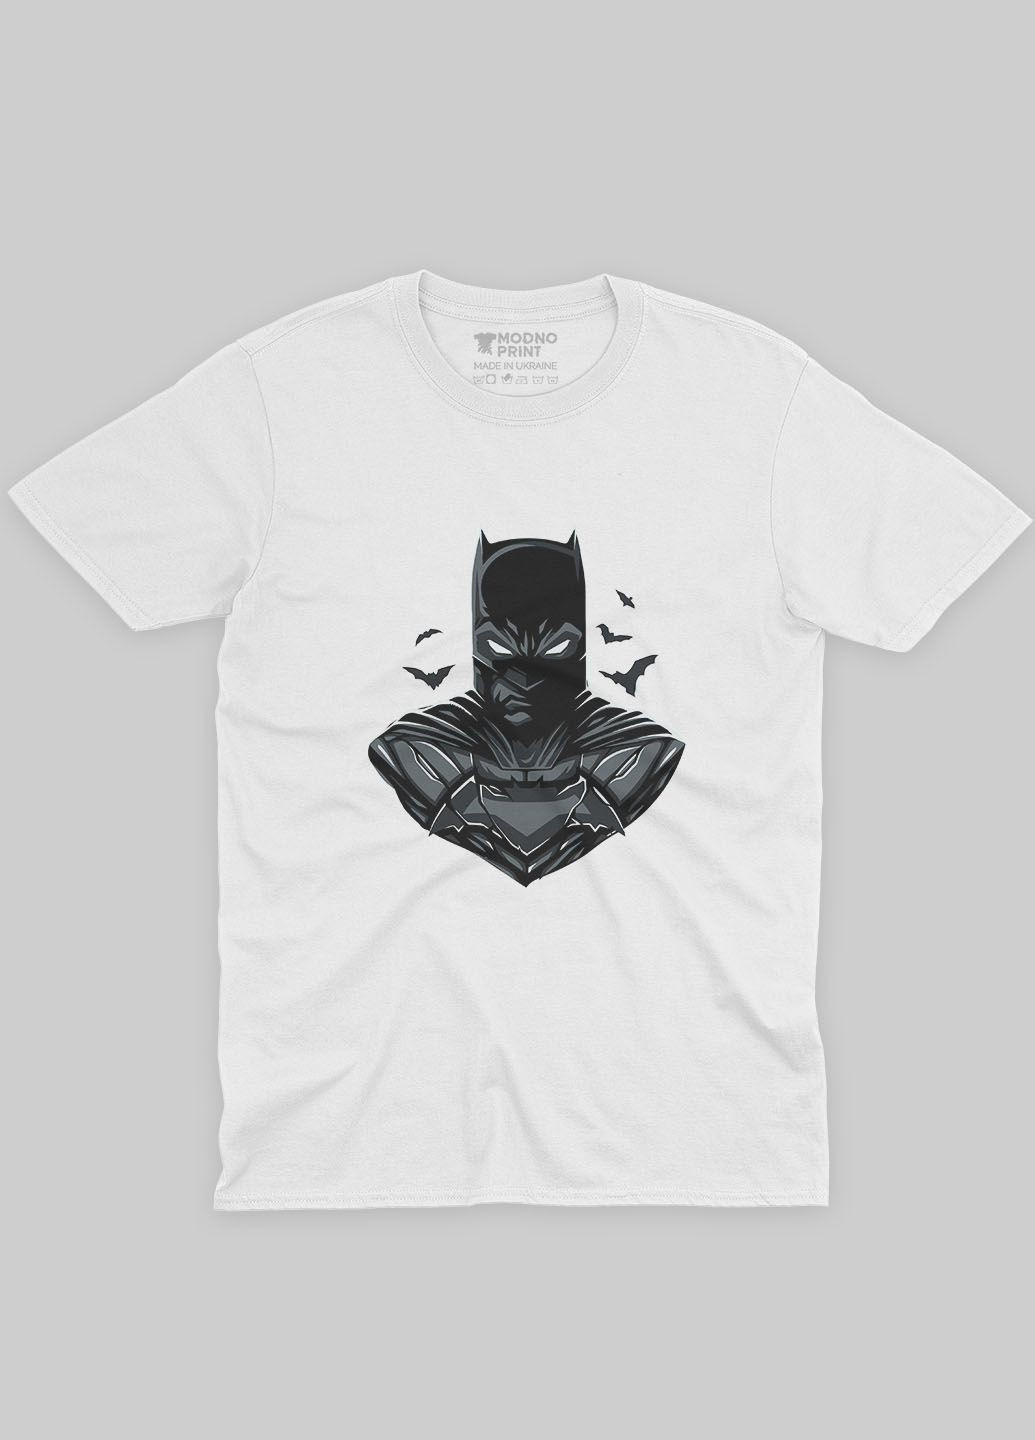 Белая демисезонная футболка для девочки с принтом супергероя - бэтмен (ts001-1-whi-006-003-026-g) Modno